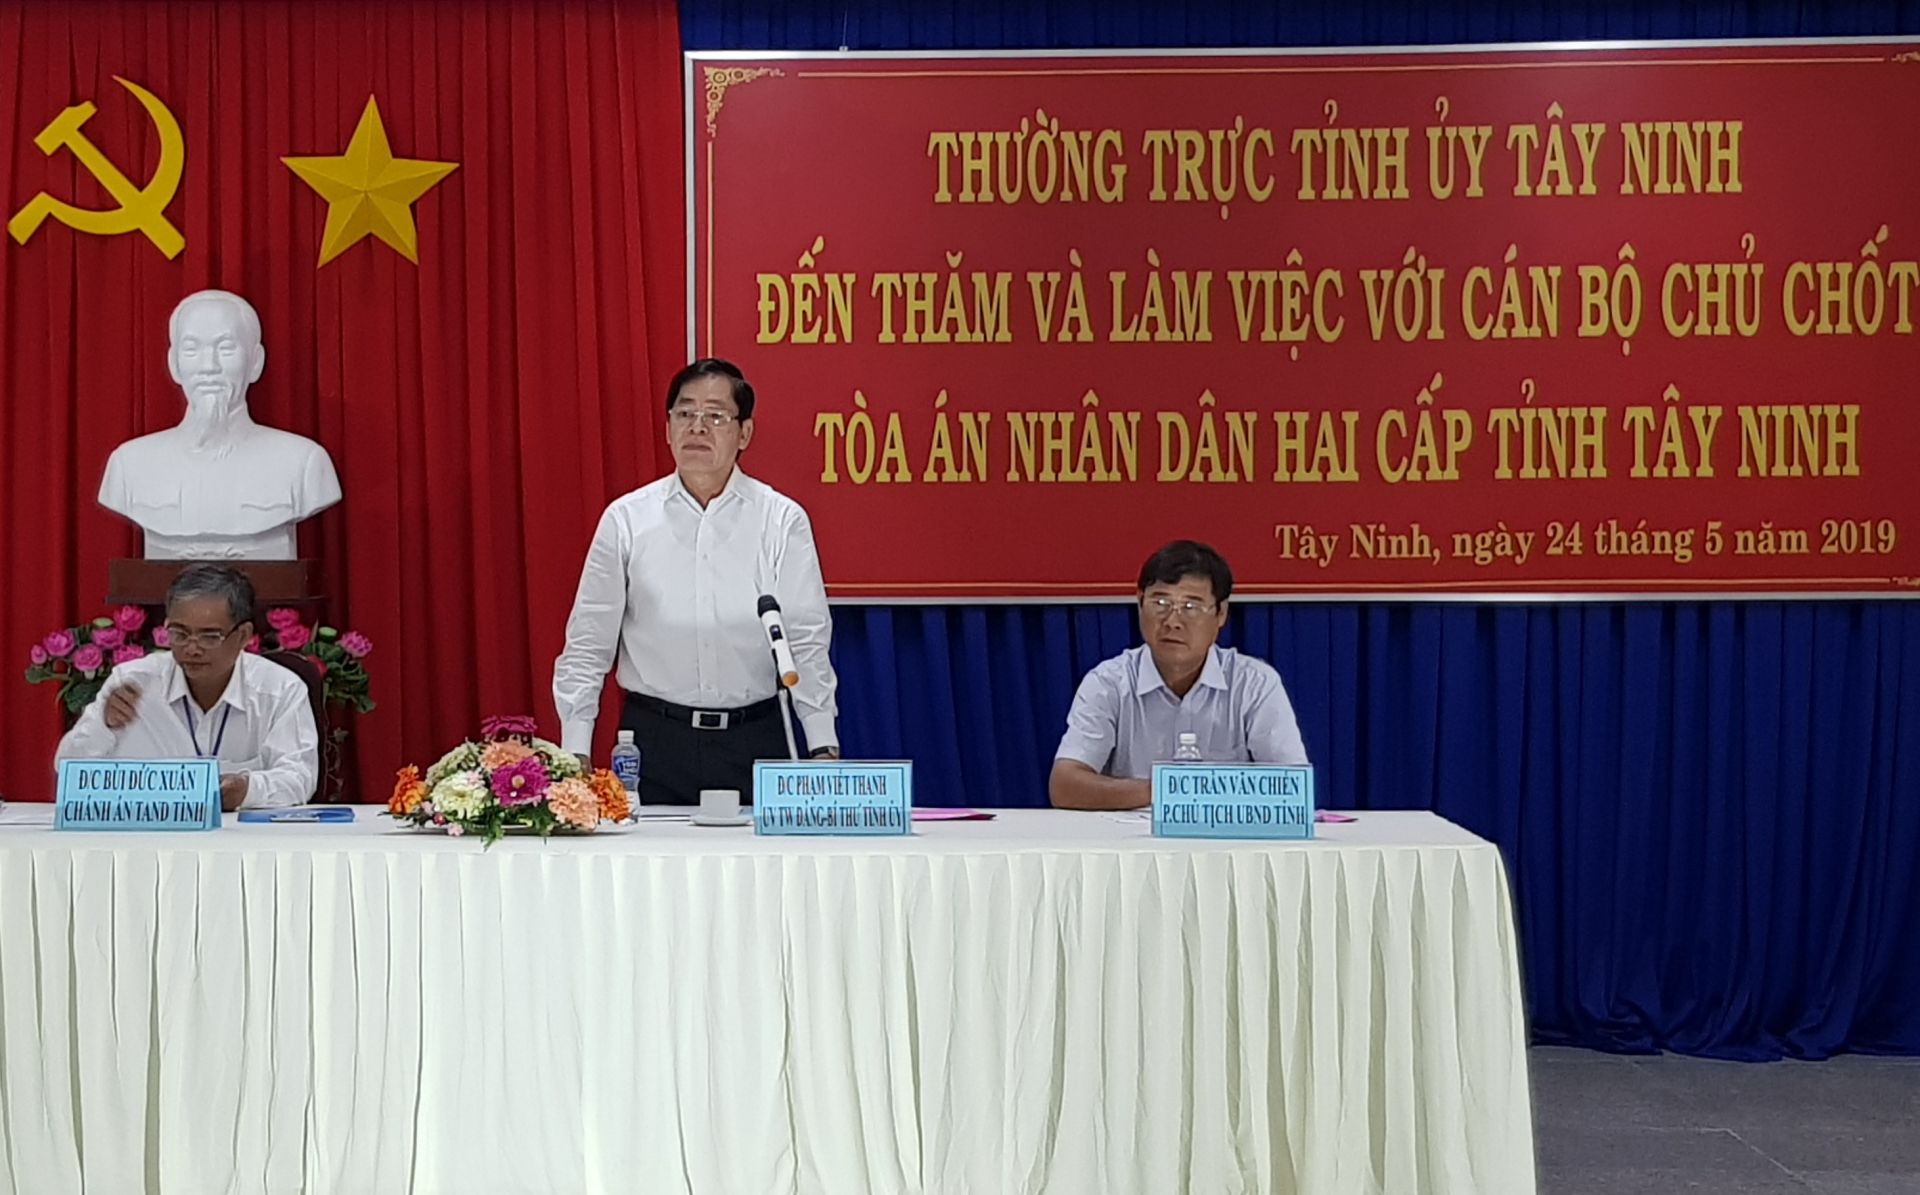 Điểm báo in Tây Ninh ngày 27.05.2019